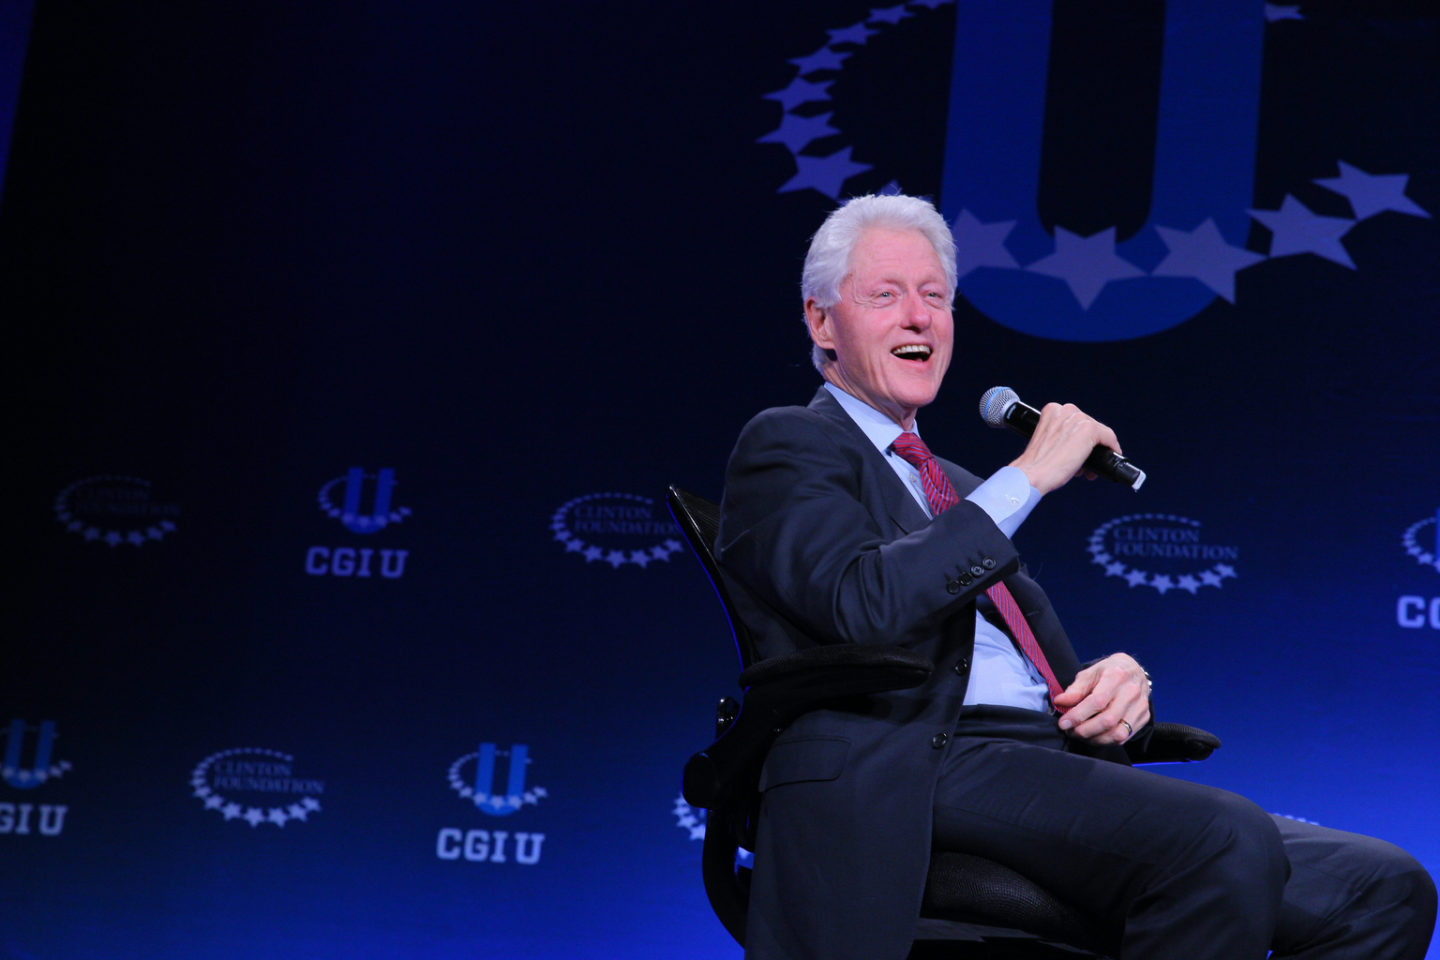 Bill Clinton speaks at the CGI U